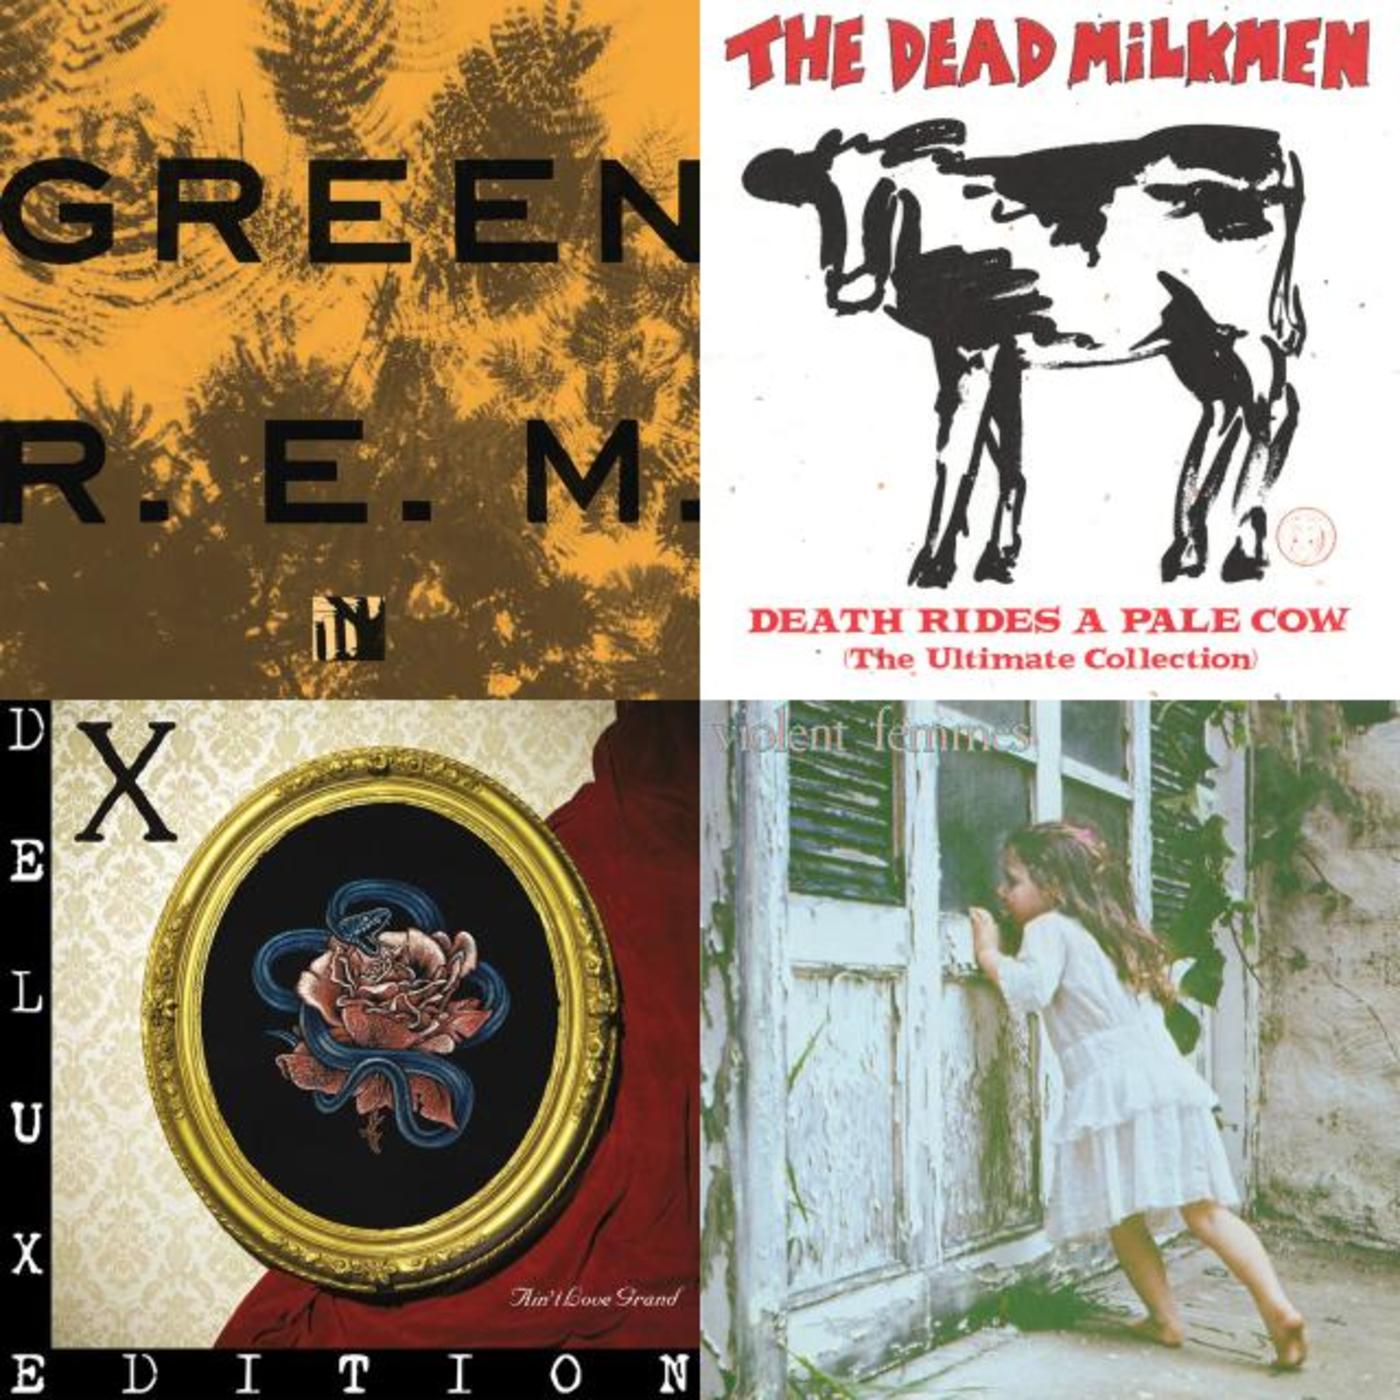 Rhino Love Songs: Alternative - R.E.M., The Dead Milkmen, X, Violent Femmes, The dB's, Poster children, Pretenders, Morrissey, Big Star, Tuff Darts, Tom Verlaine, Redd Kross, The Breeders